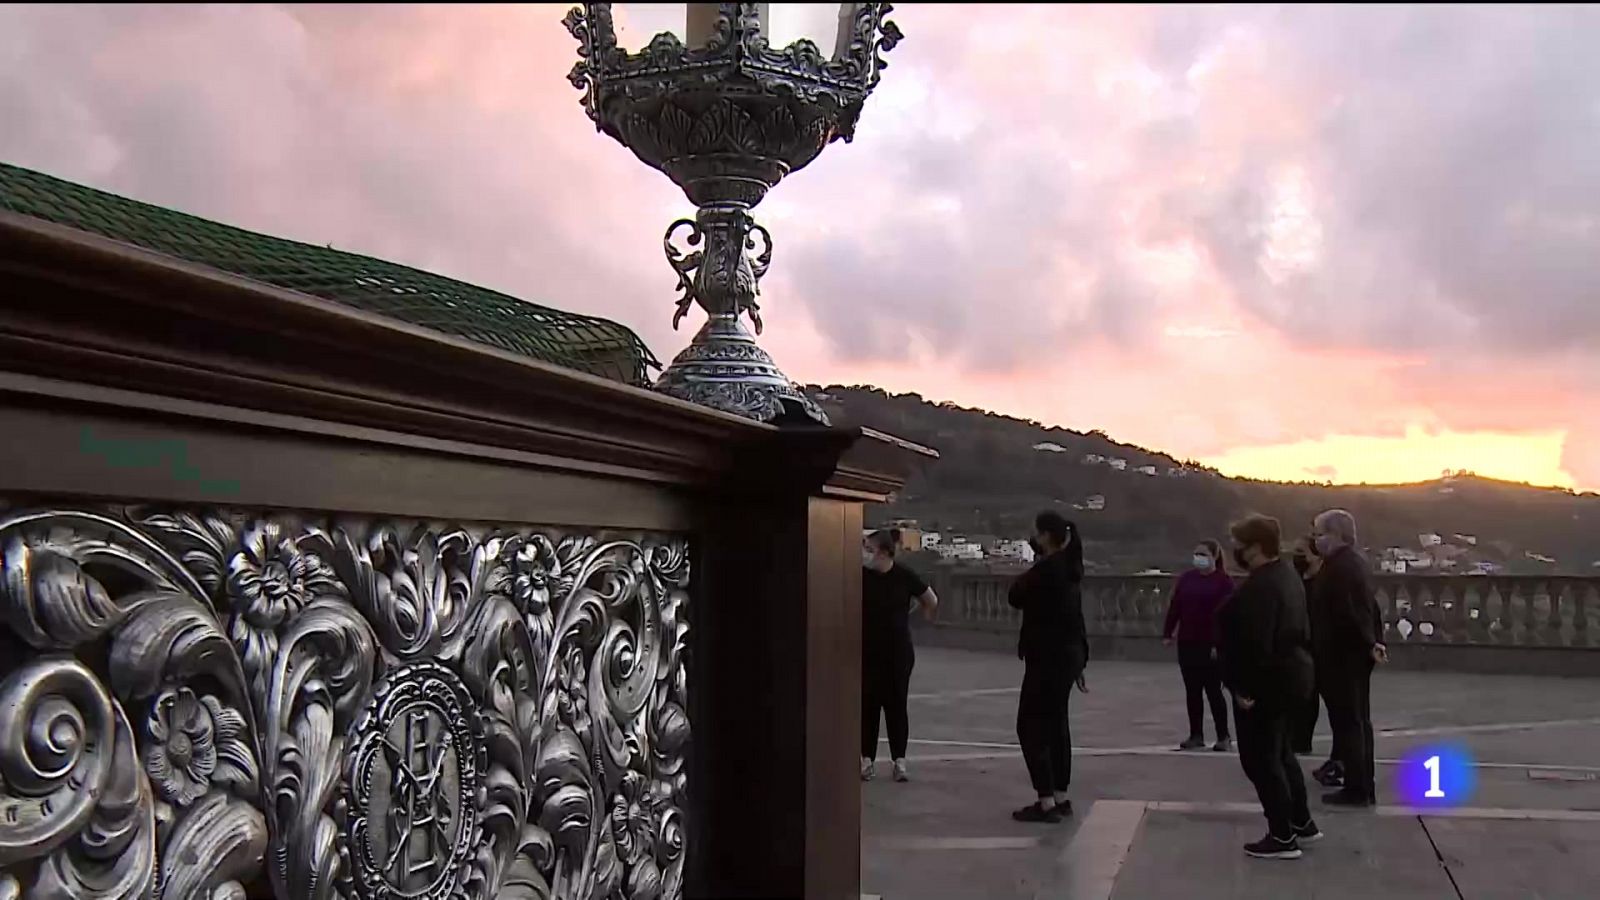 24 mujeres cargan el Cristo de la Buena Muerte en Gran Canaria